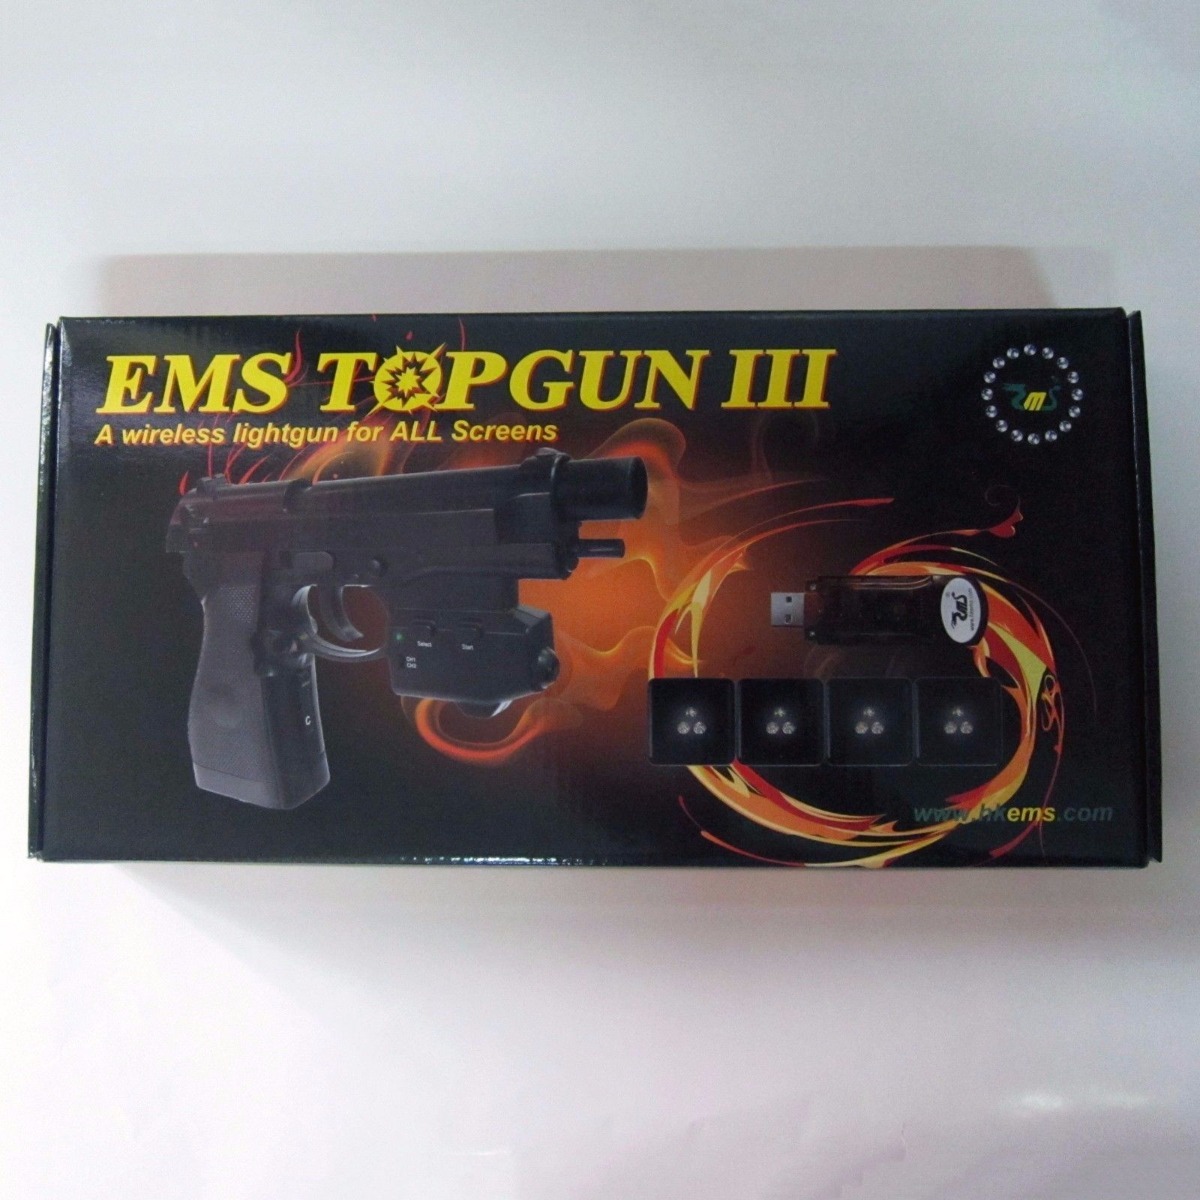 ems topgun iii